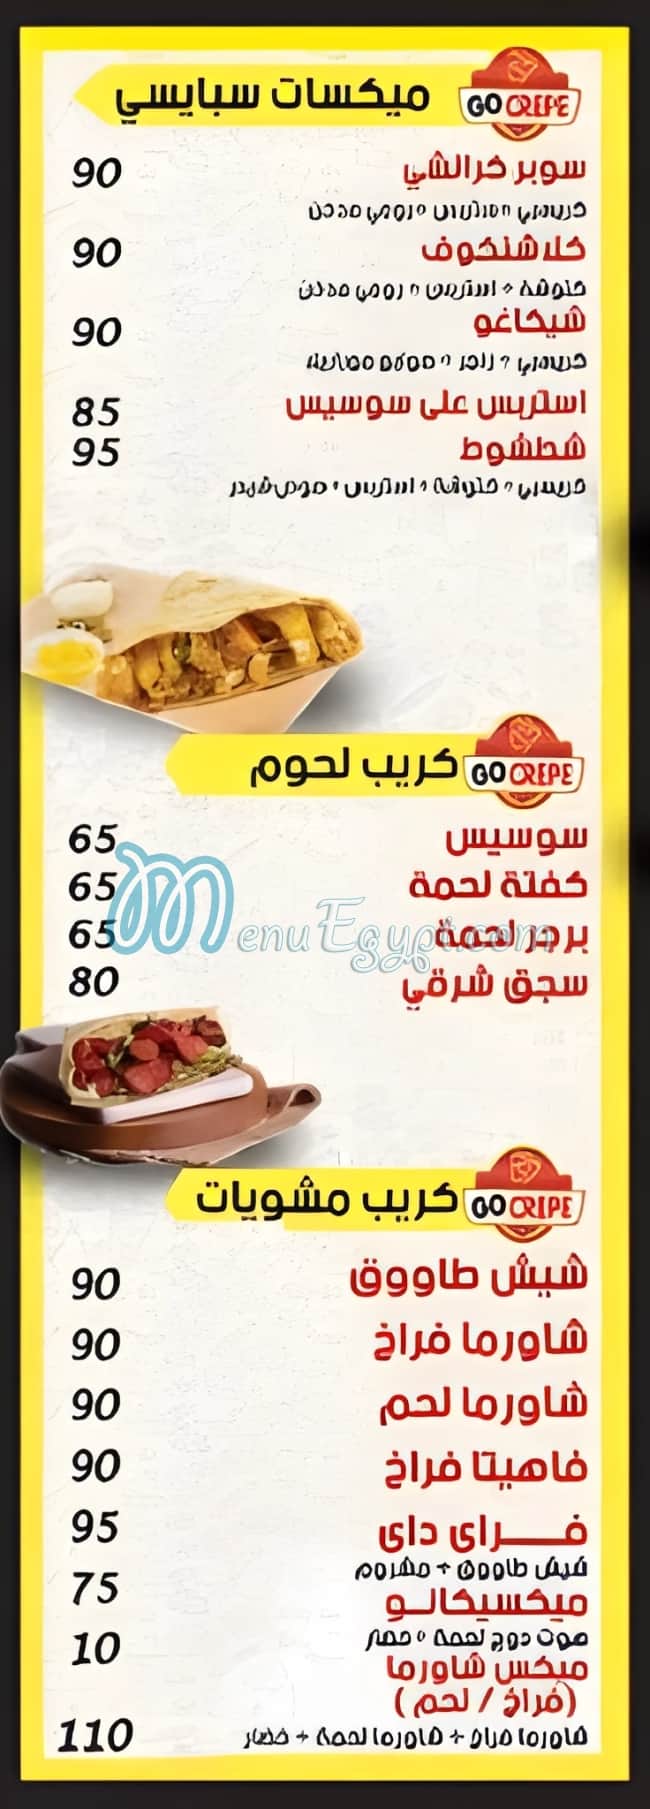 Go Crepe Maadi menu prices